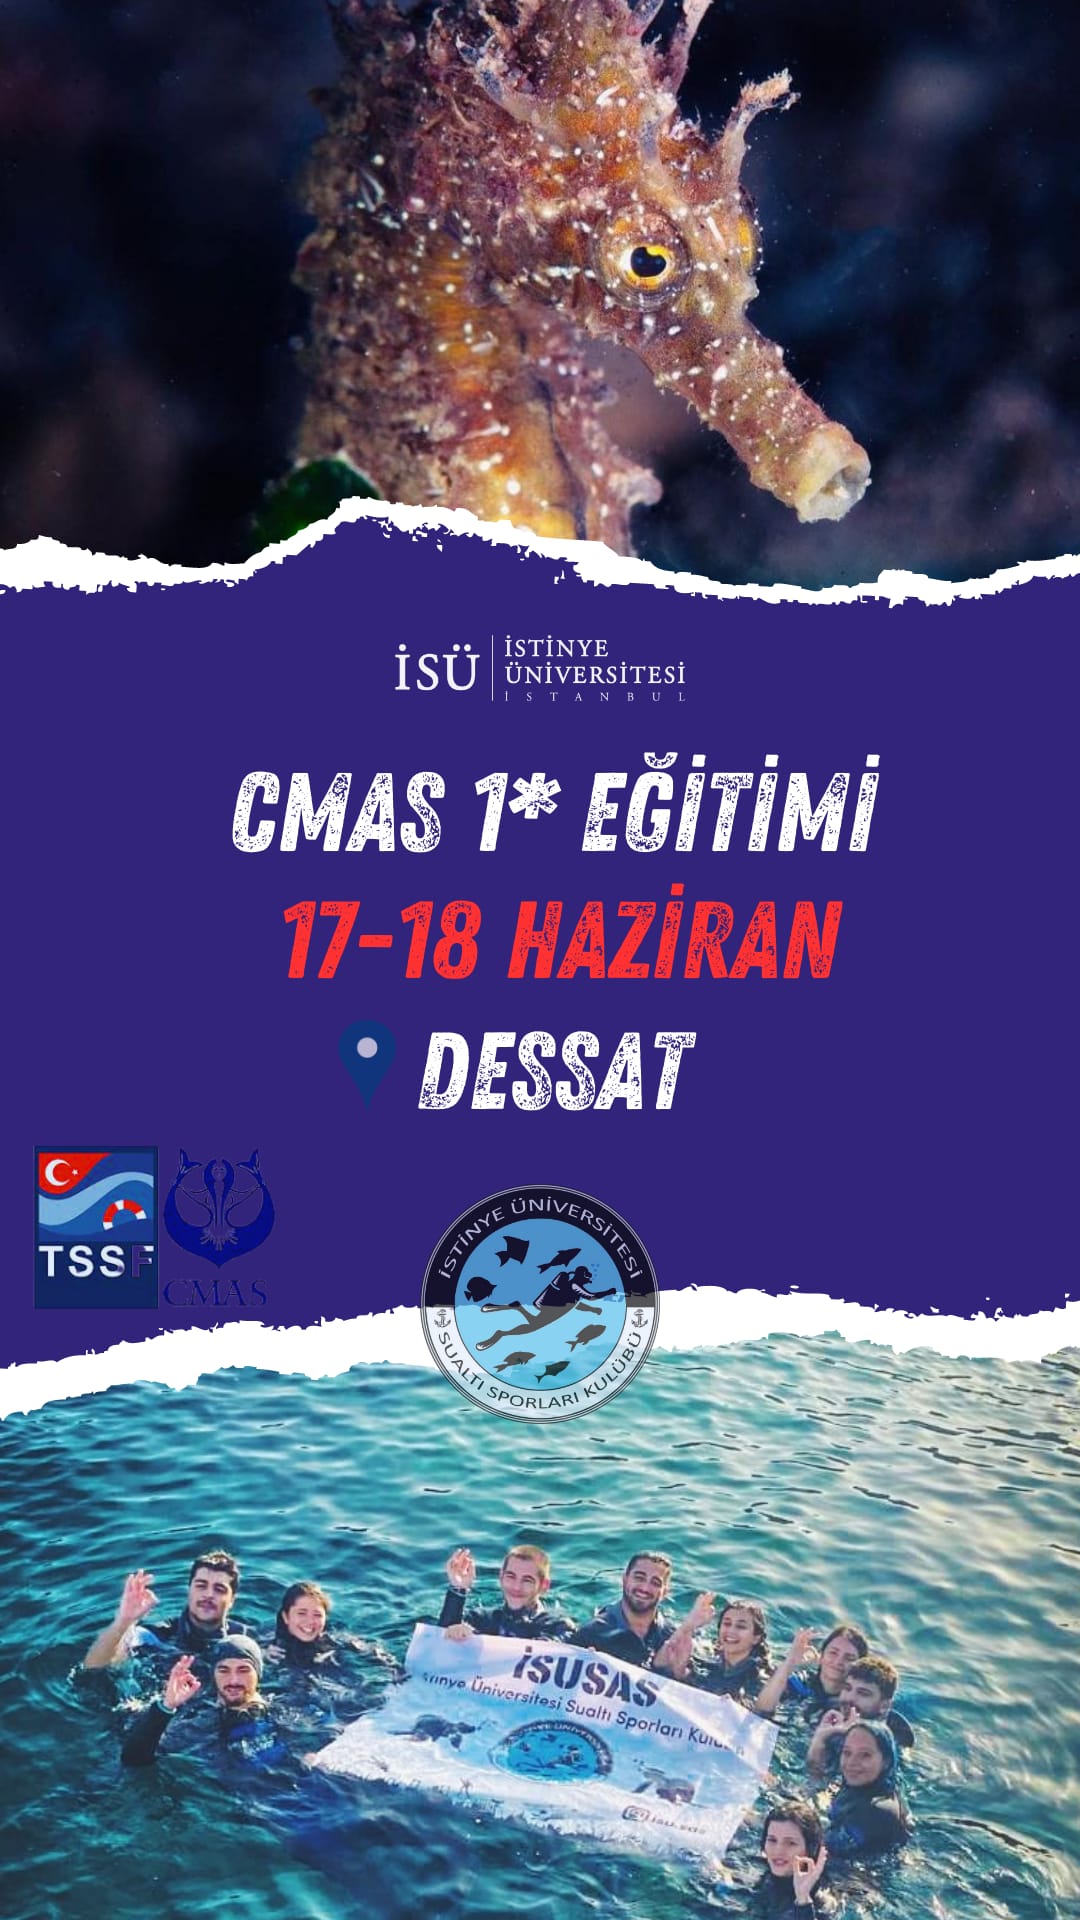 TSSF/Cmas 1* Diver Training- ISUSAS